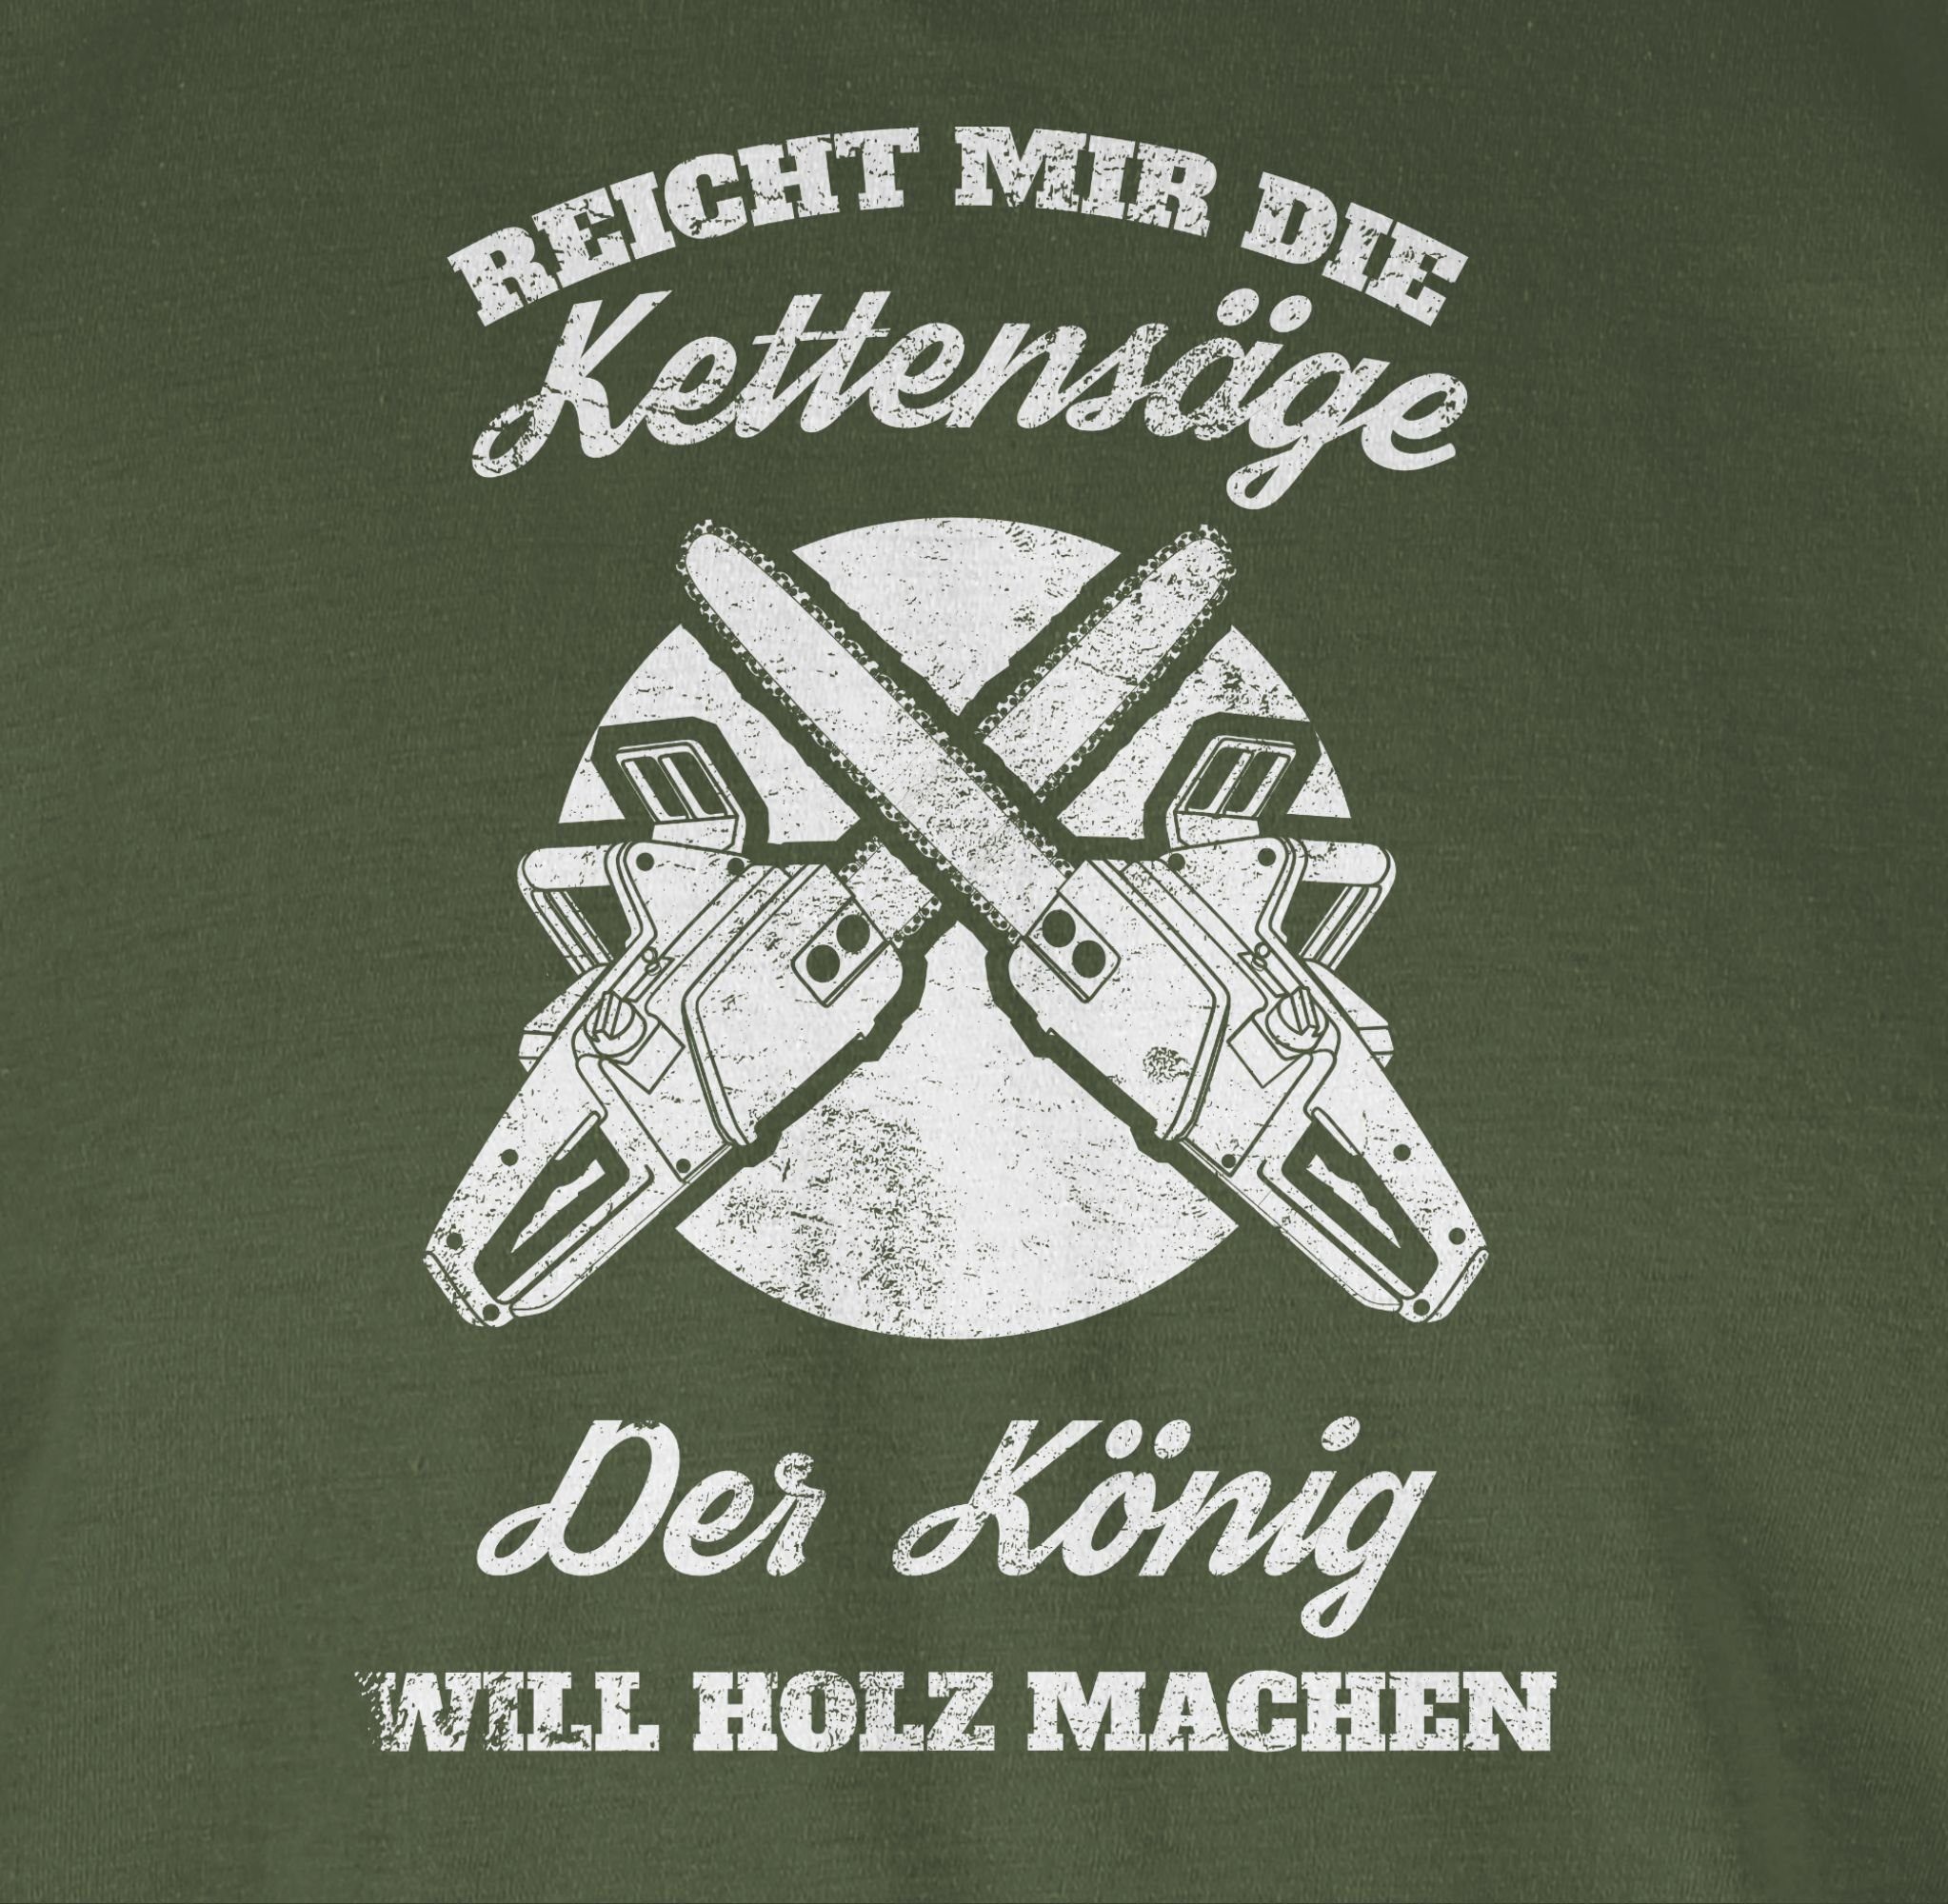 03 Reicht Kettensäge Army mir Shirtracer Sprüche Grün T-Shirt Statement die